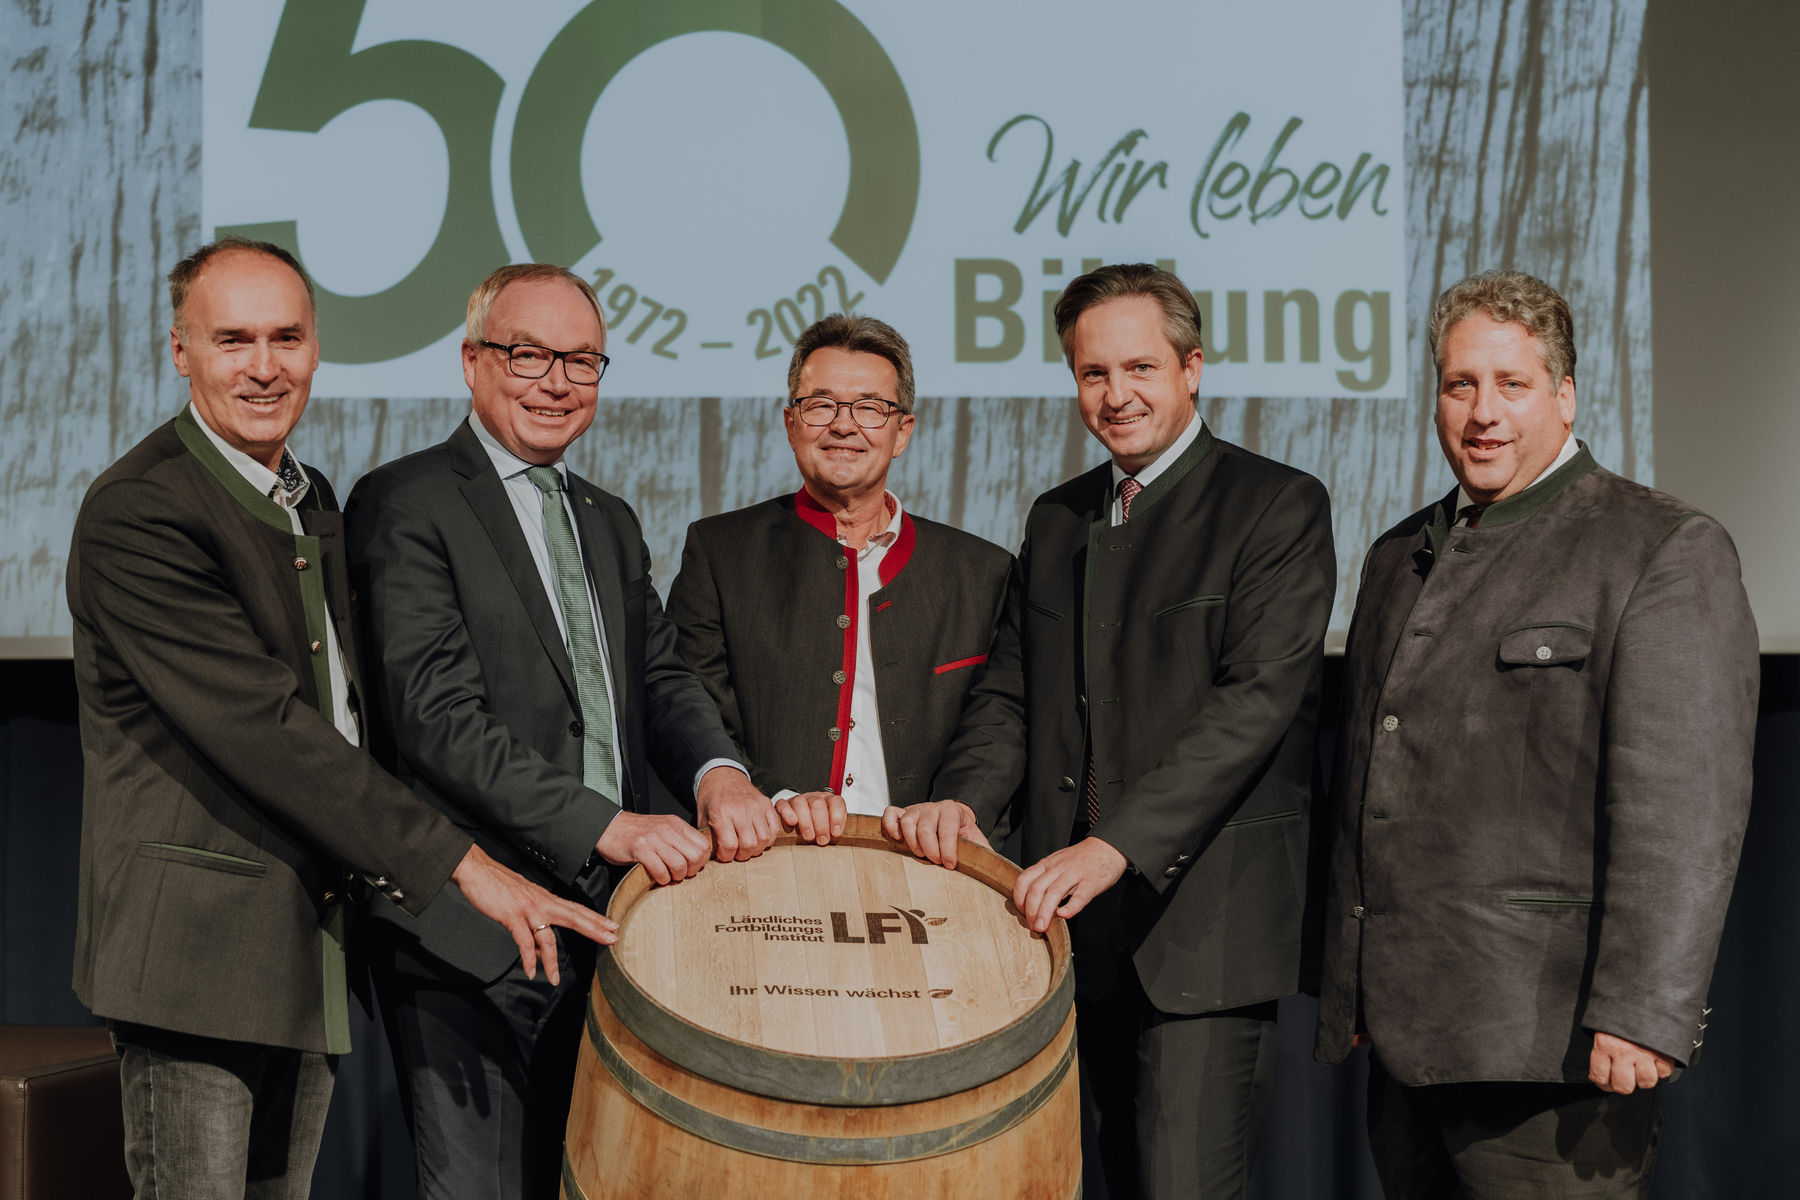 Das Ländliche Fortbildungsinstitut kurz LFI feierte 50 Jahre und viele Gratulanten waren mit dabei.